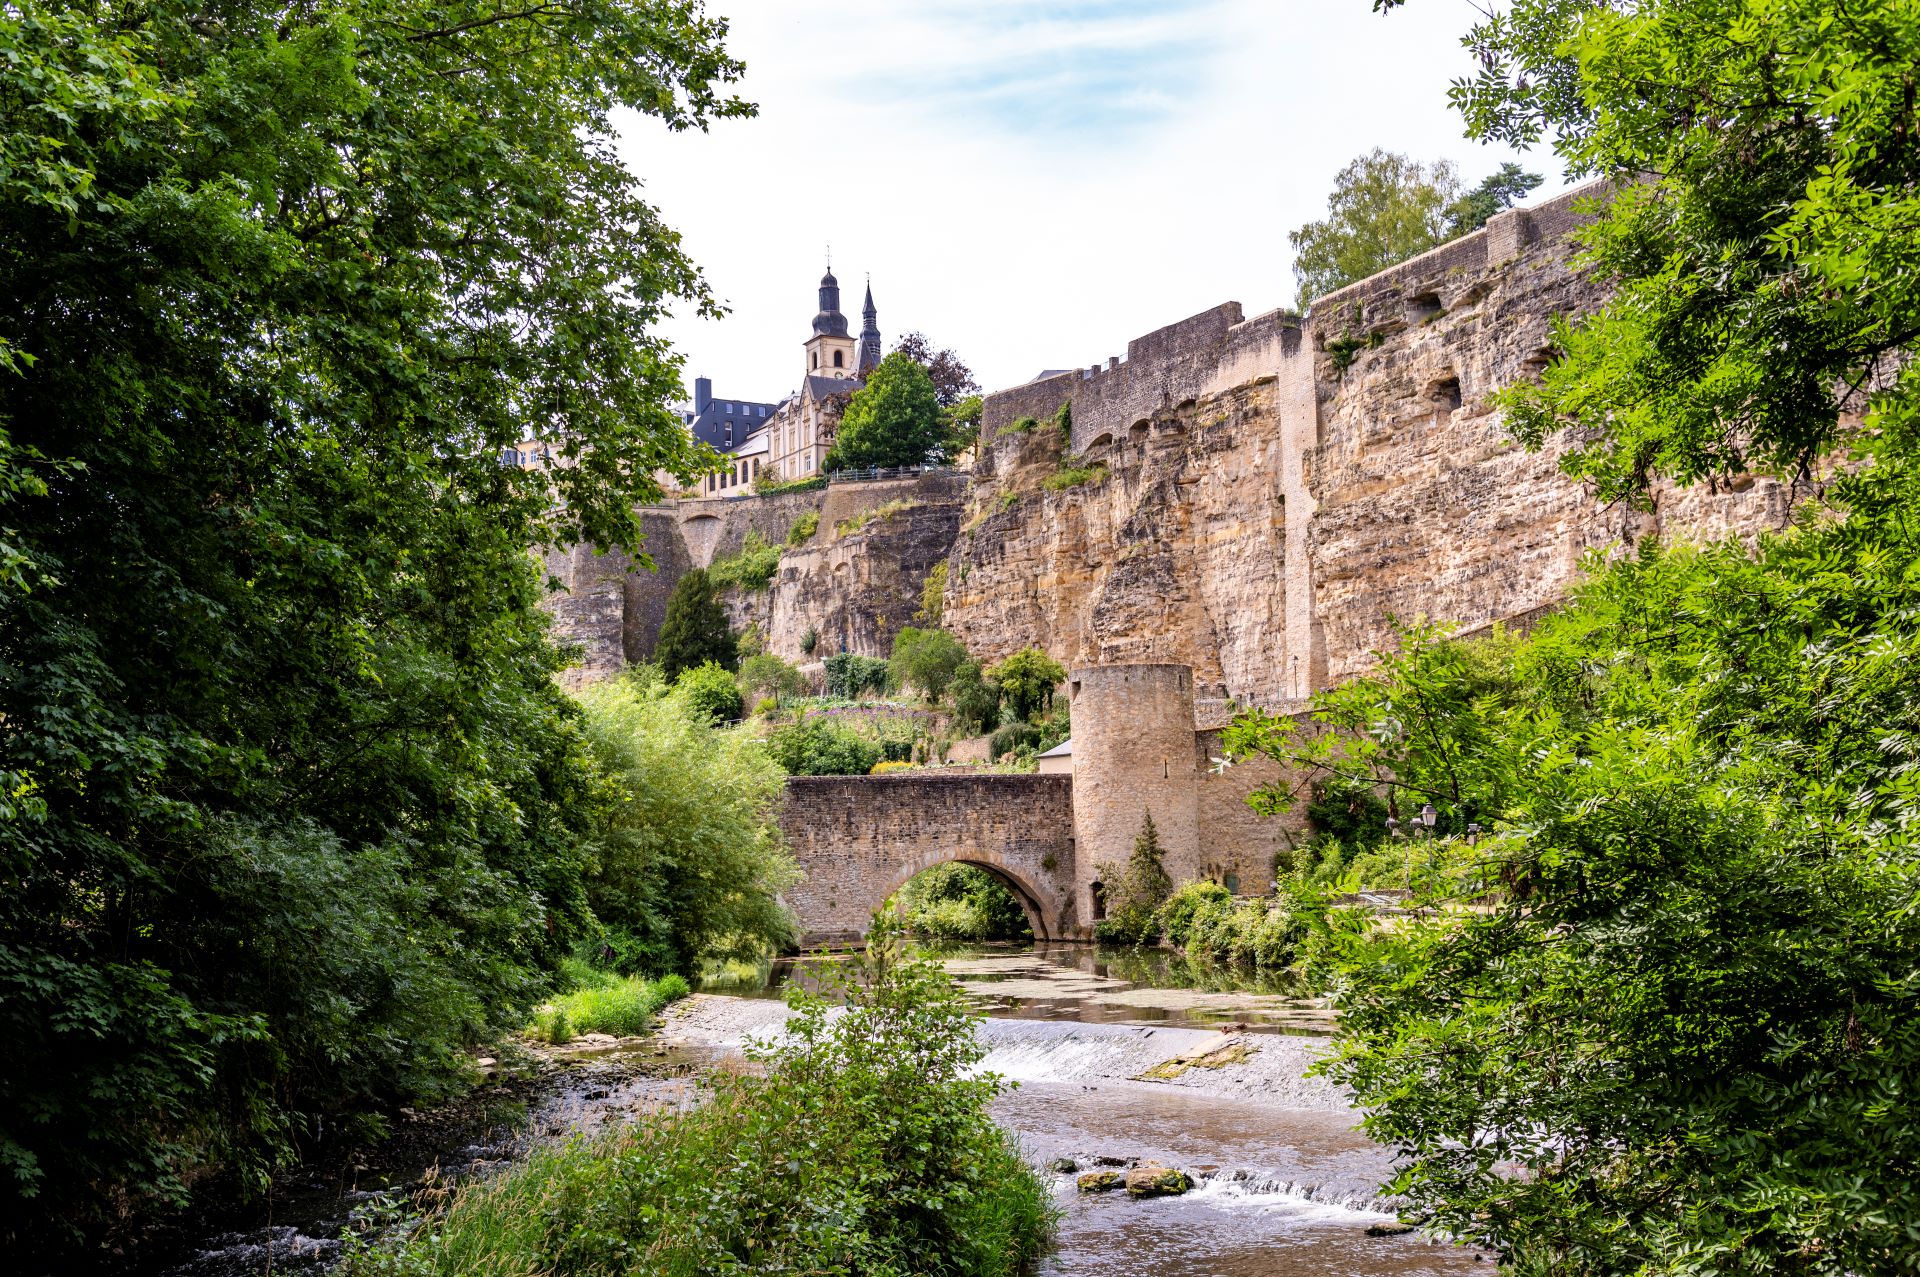 Entre les arbres, on a une vue sur les murs de la forteresse du Luxembourg et sur un vieux pont de pierre. La pierre est beige et les arbres sont vert clair, mais le ciel est à peine visible.